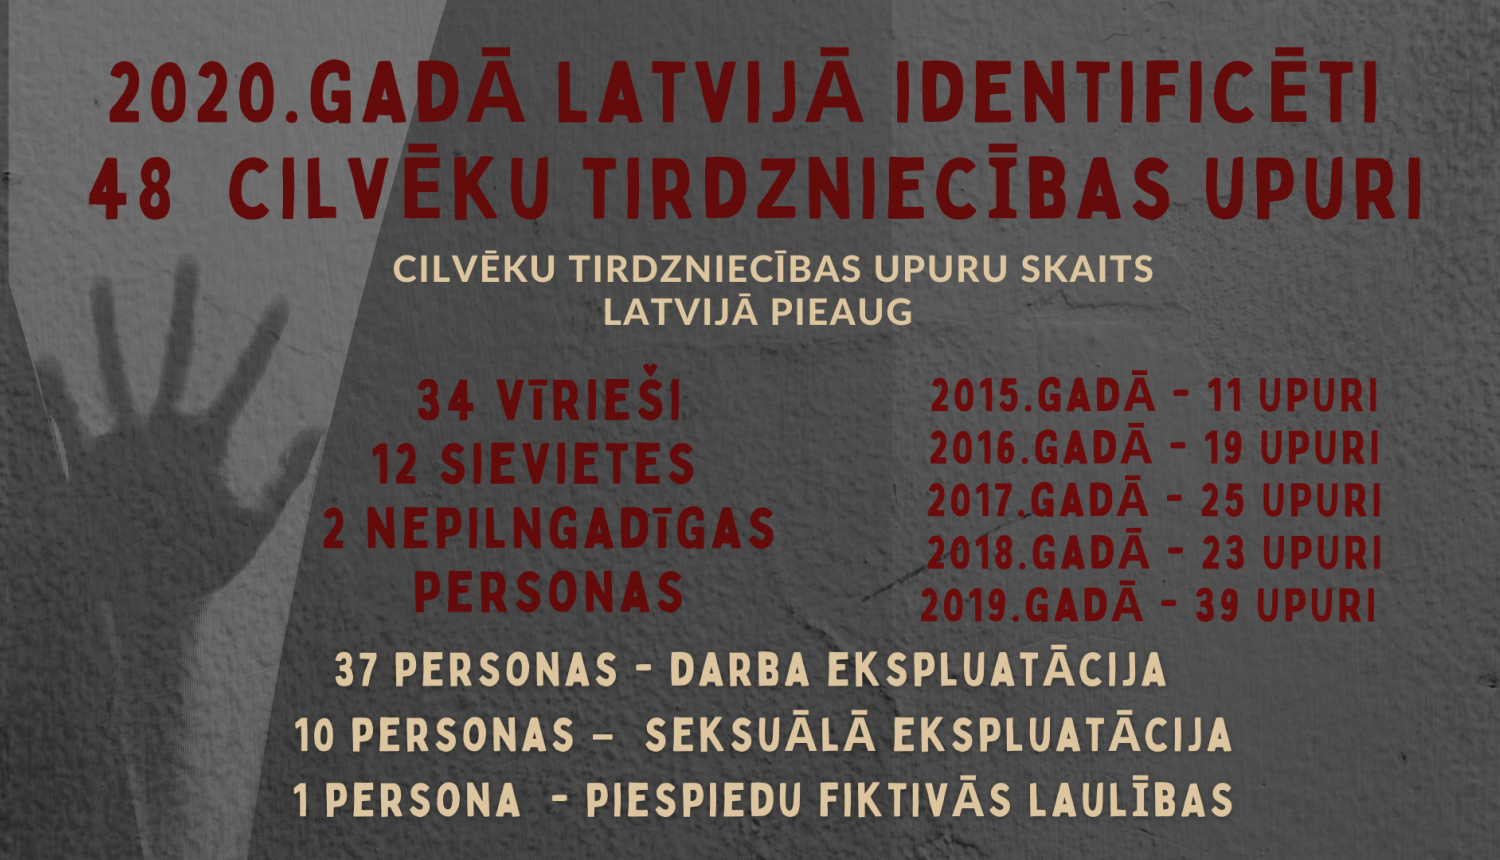 Attēls satur informāciju par cilvēku tirdzniecības upuriem Latvijā